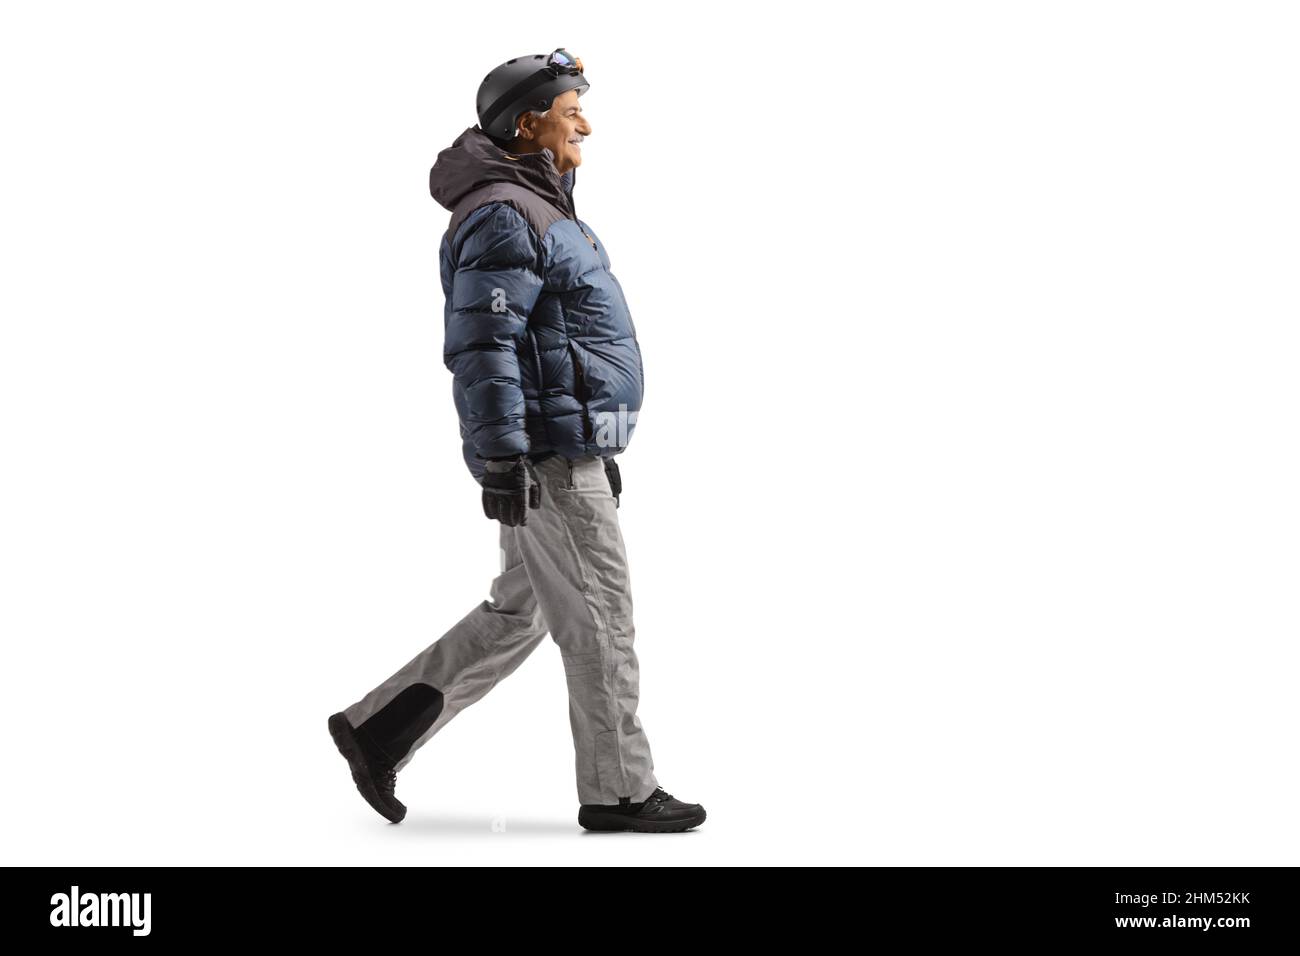 Atractivo Hombre En Ropa De Invierno Caminando En La Nieve Ejecución  Material De Esquí Y Sonriente. Fotos, retratos, imágenes y fotografía de  archivo libres de derecho. Image 1841973